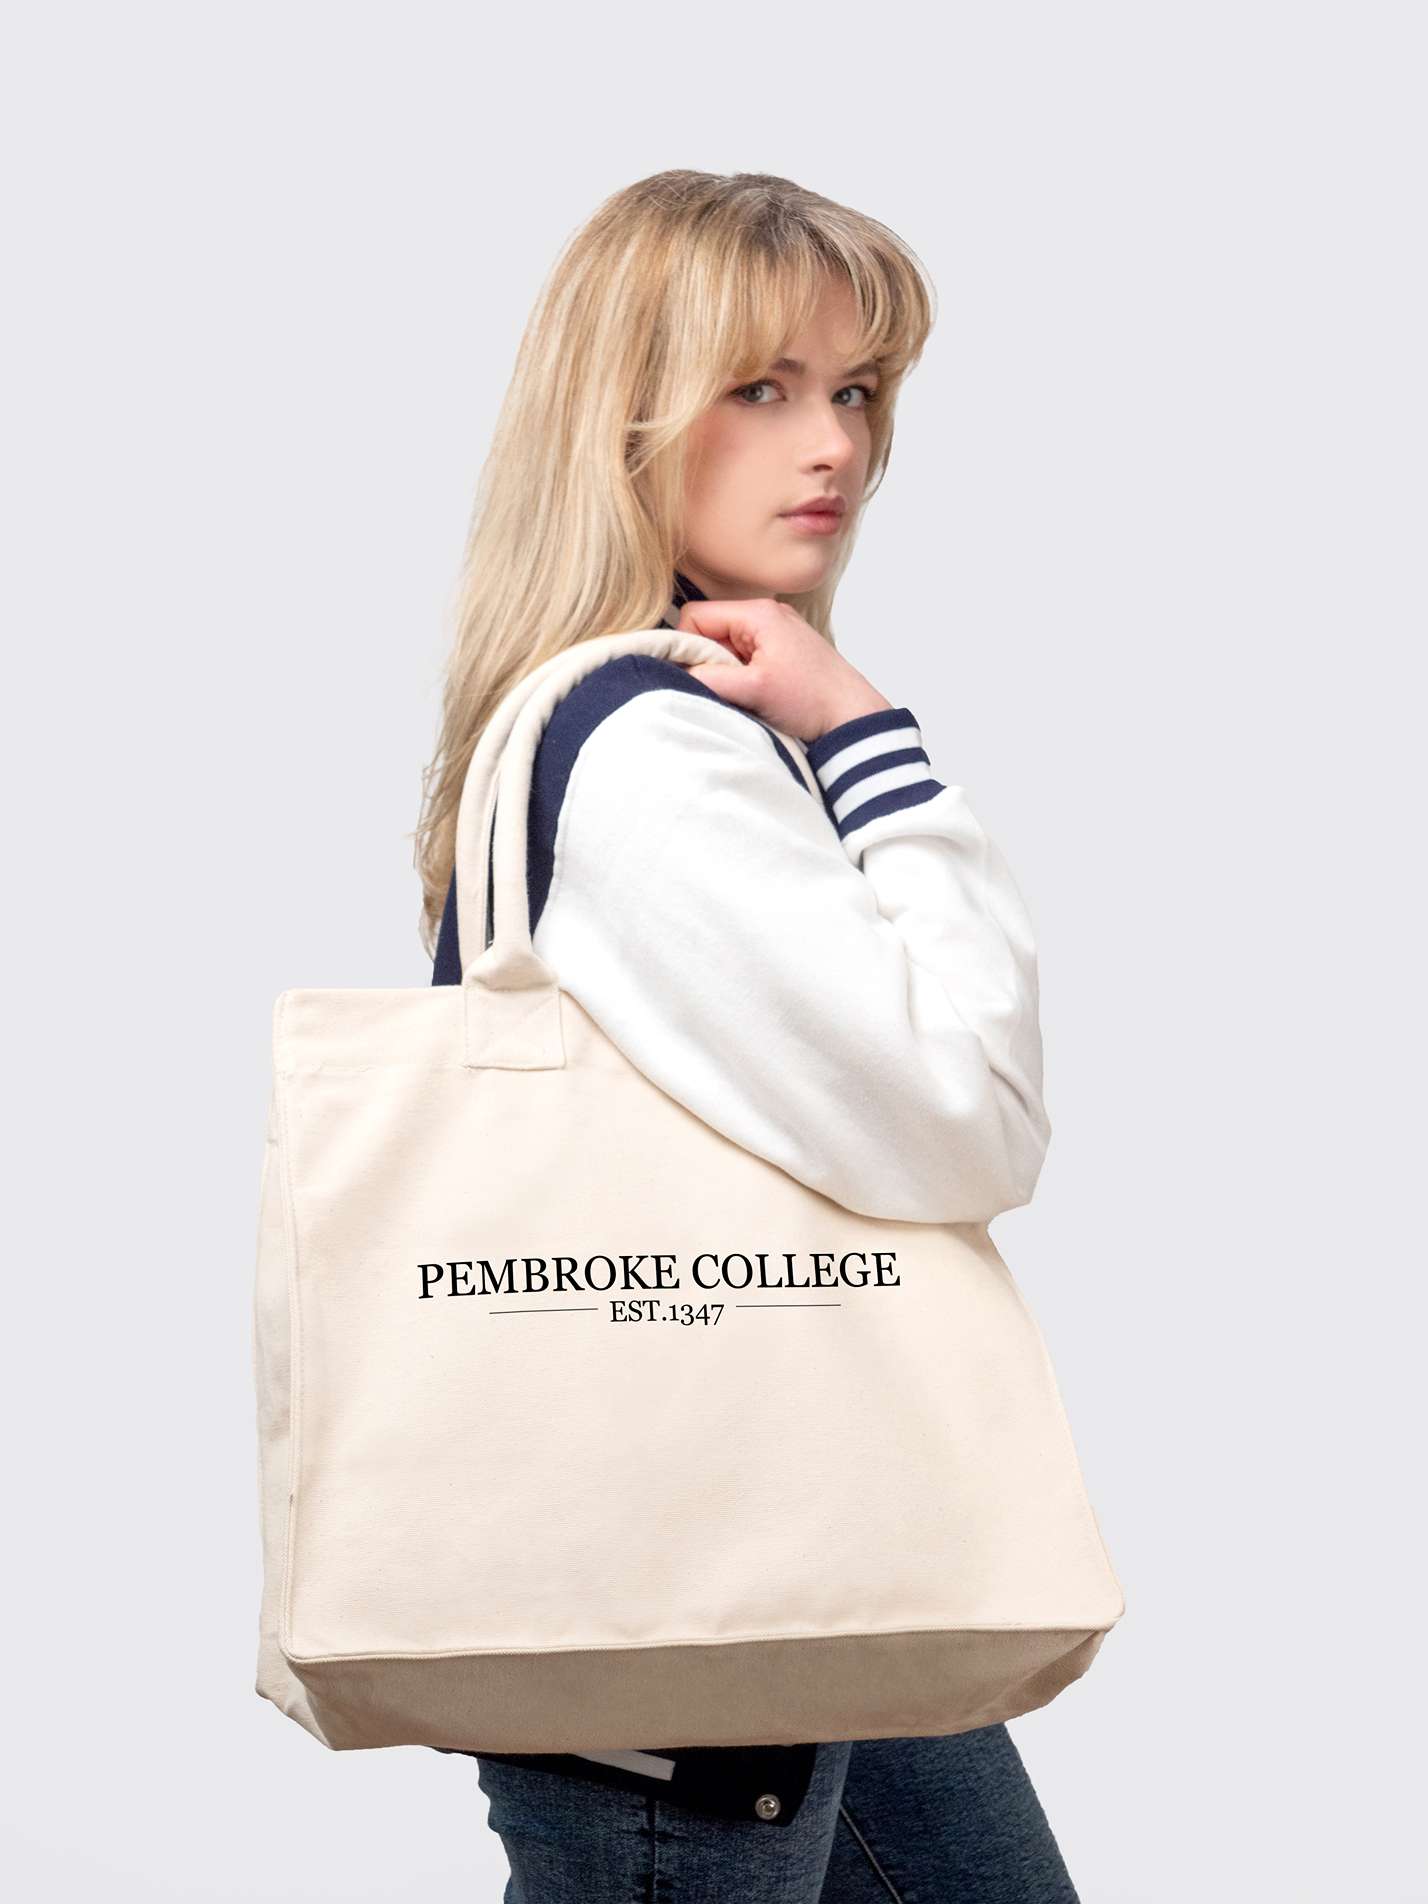 Pembroke College Cambridge Cotton Canvas Shopper